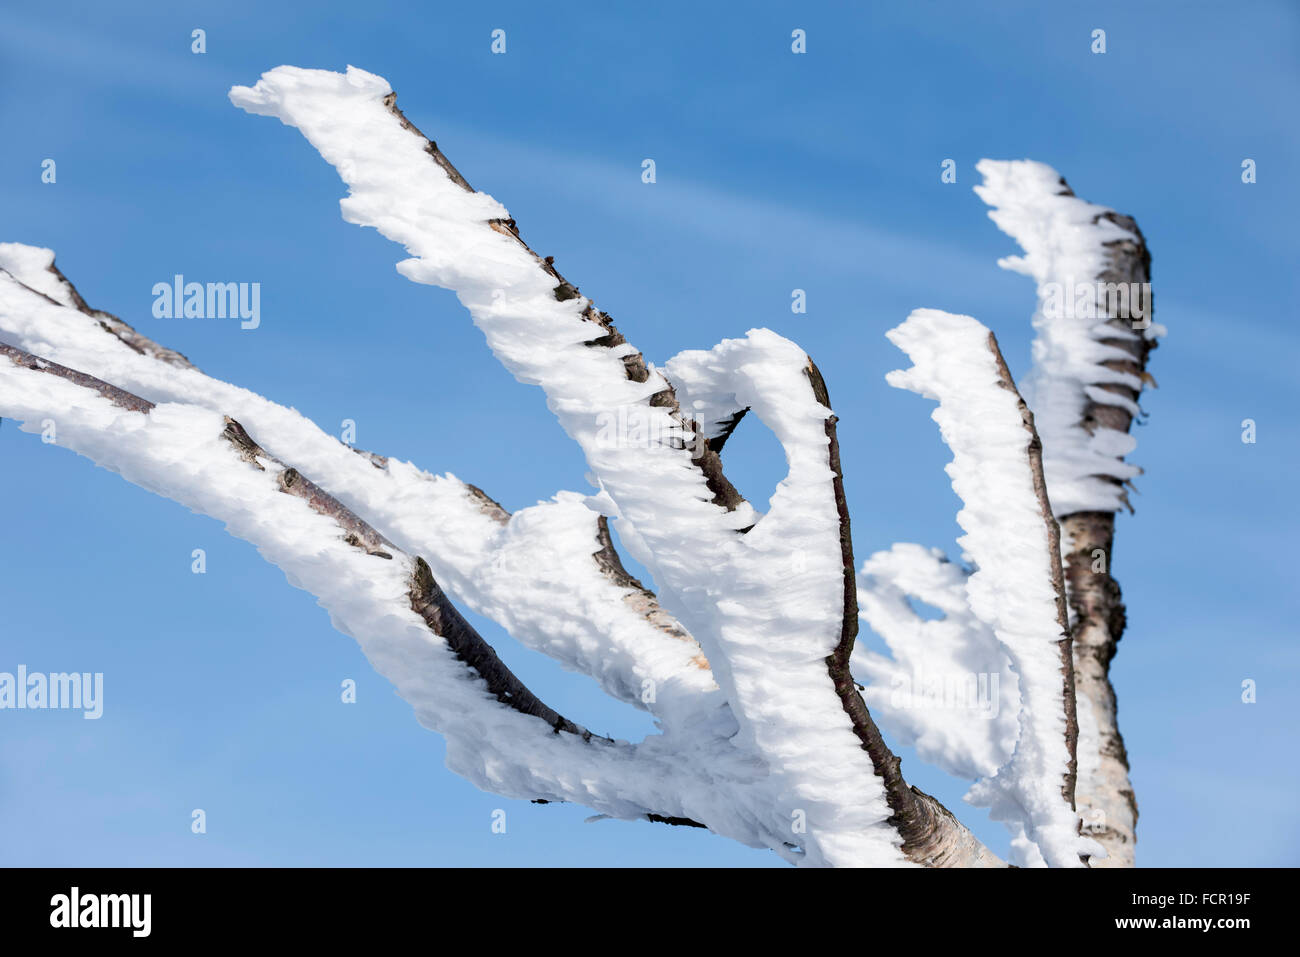 Birkenzweige Baum bedeckt in Raureif und Schnee im Winter mit Eis Kristallbildung durch Wind in gleiche Richtung zeigen Stockfoto